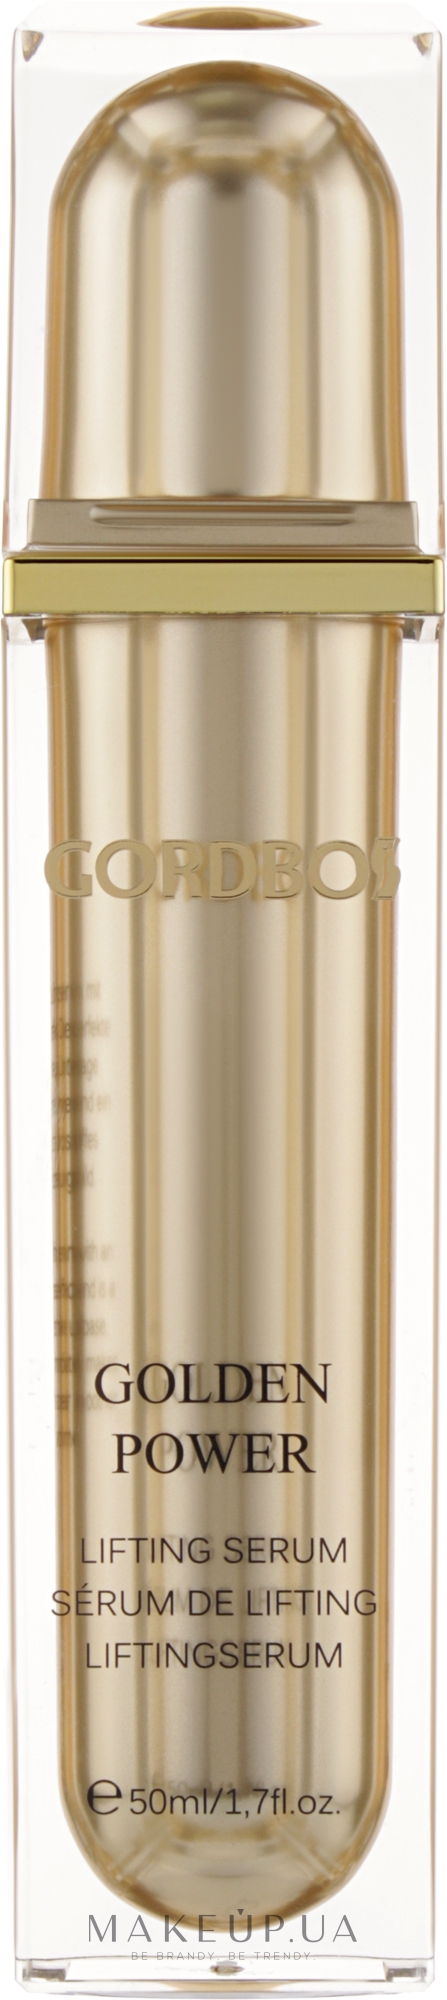 Сыворотка-лифтинг для лица - Gordbos Golden Power Lifting Serum — фото 50ml